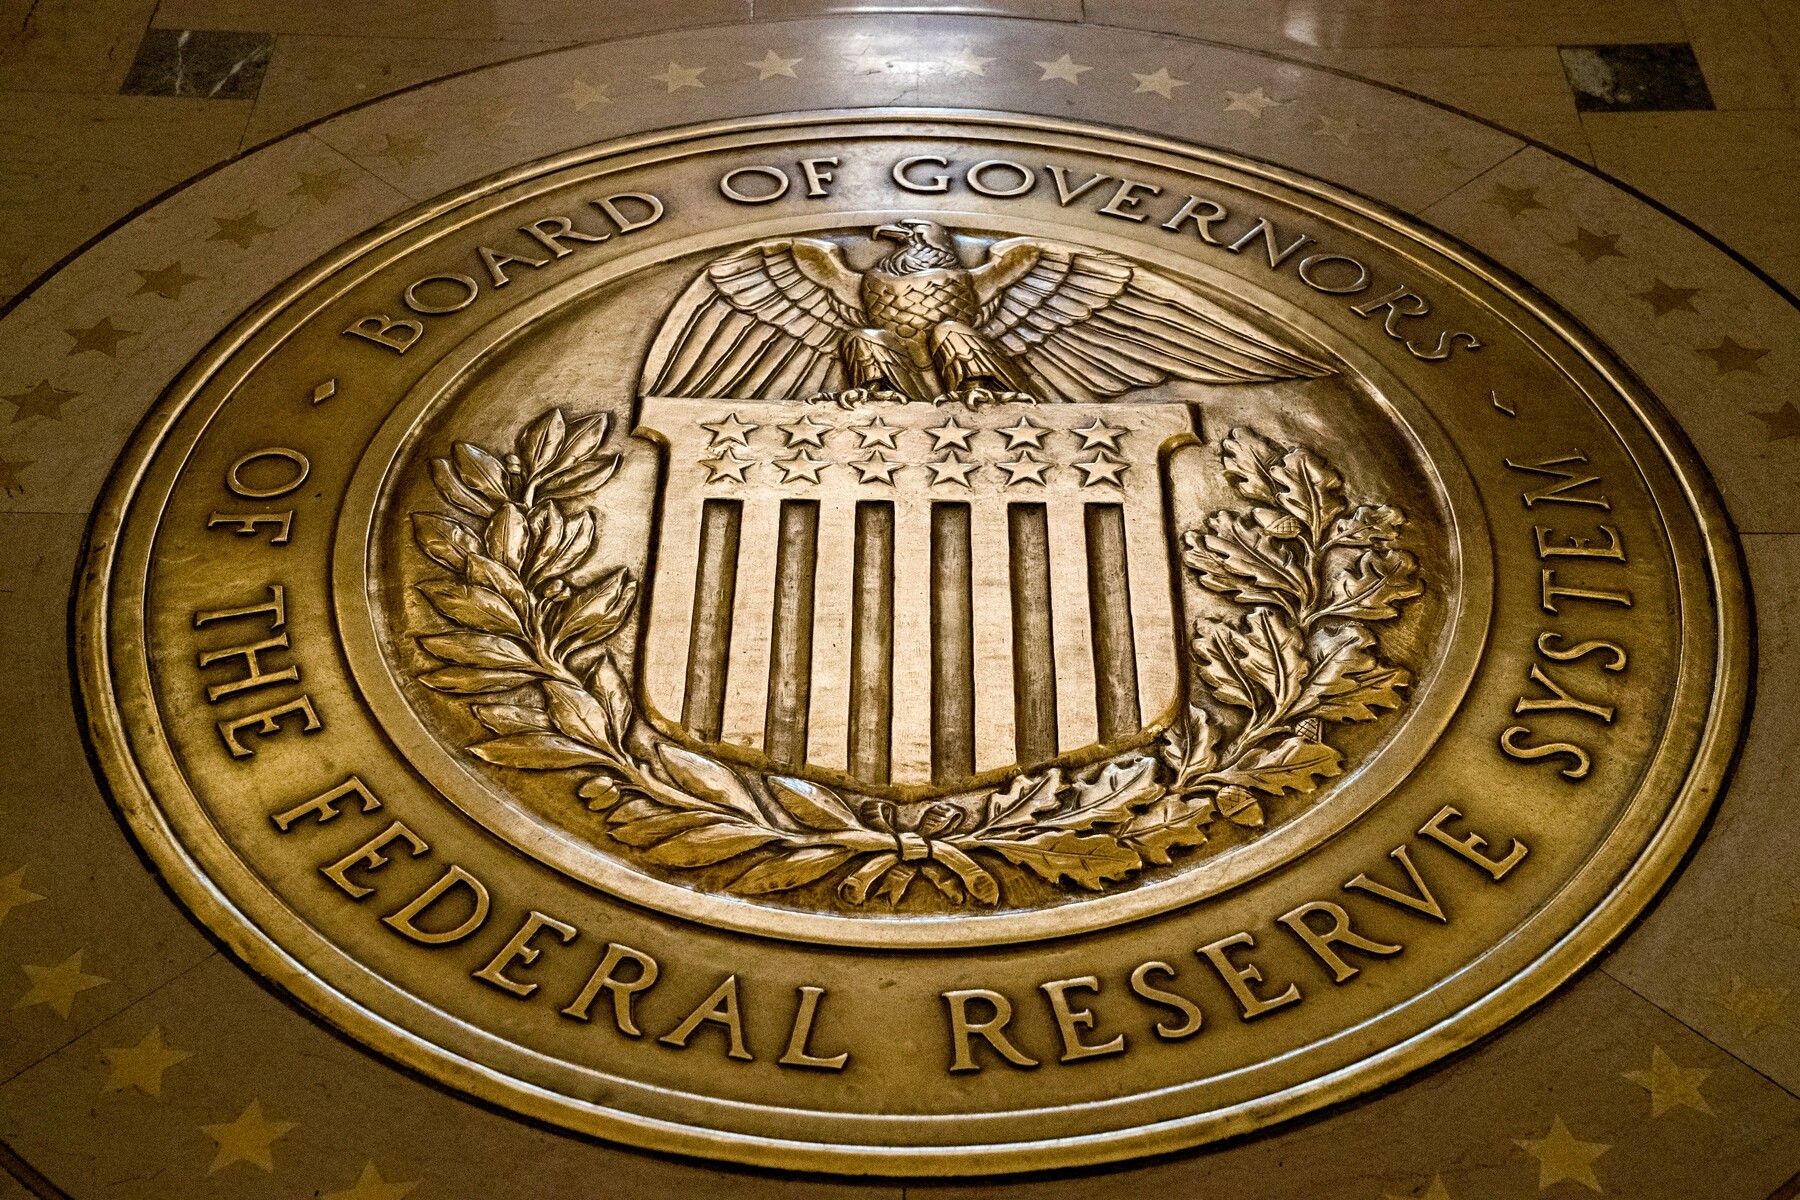 Ranný prehľad Forbesu: Fed signalizuje ďalšie znižovanie sadzieb, akciové indexy rastú